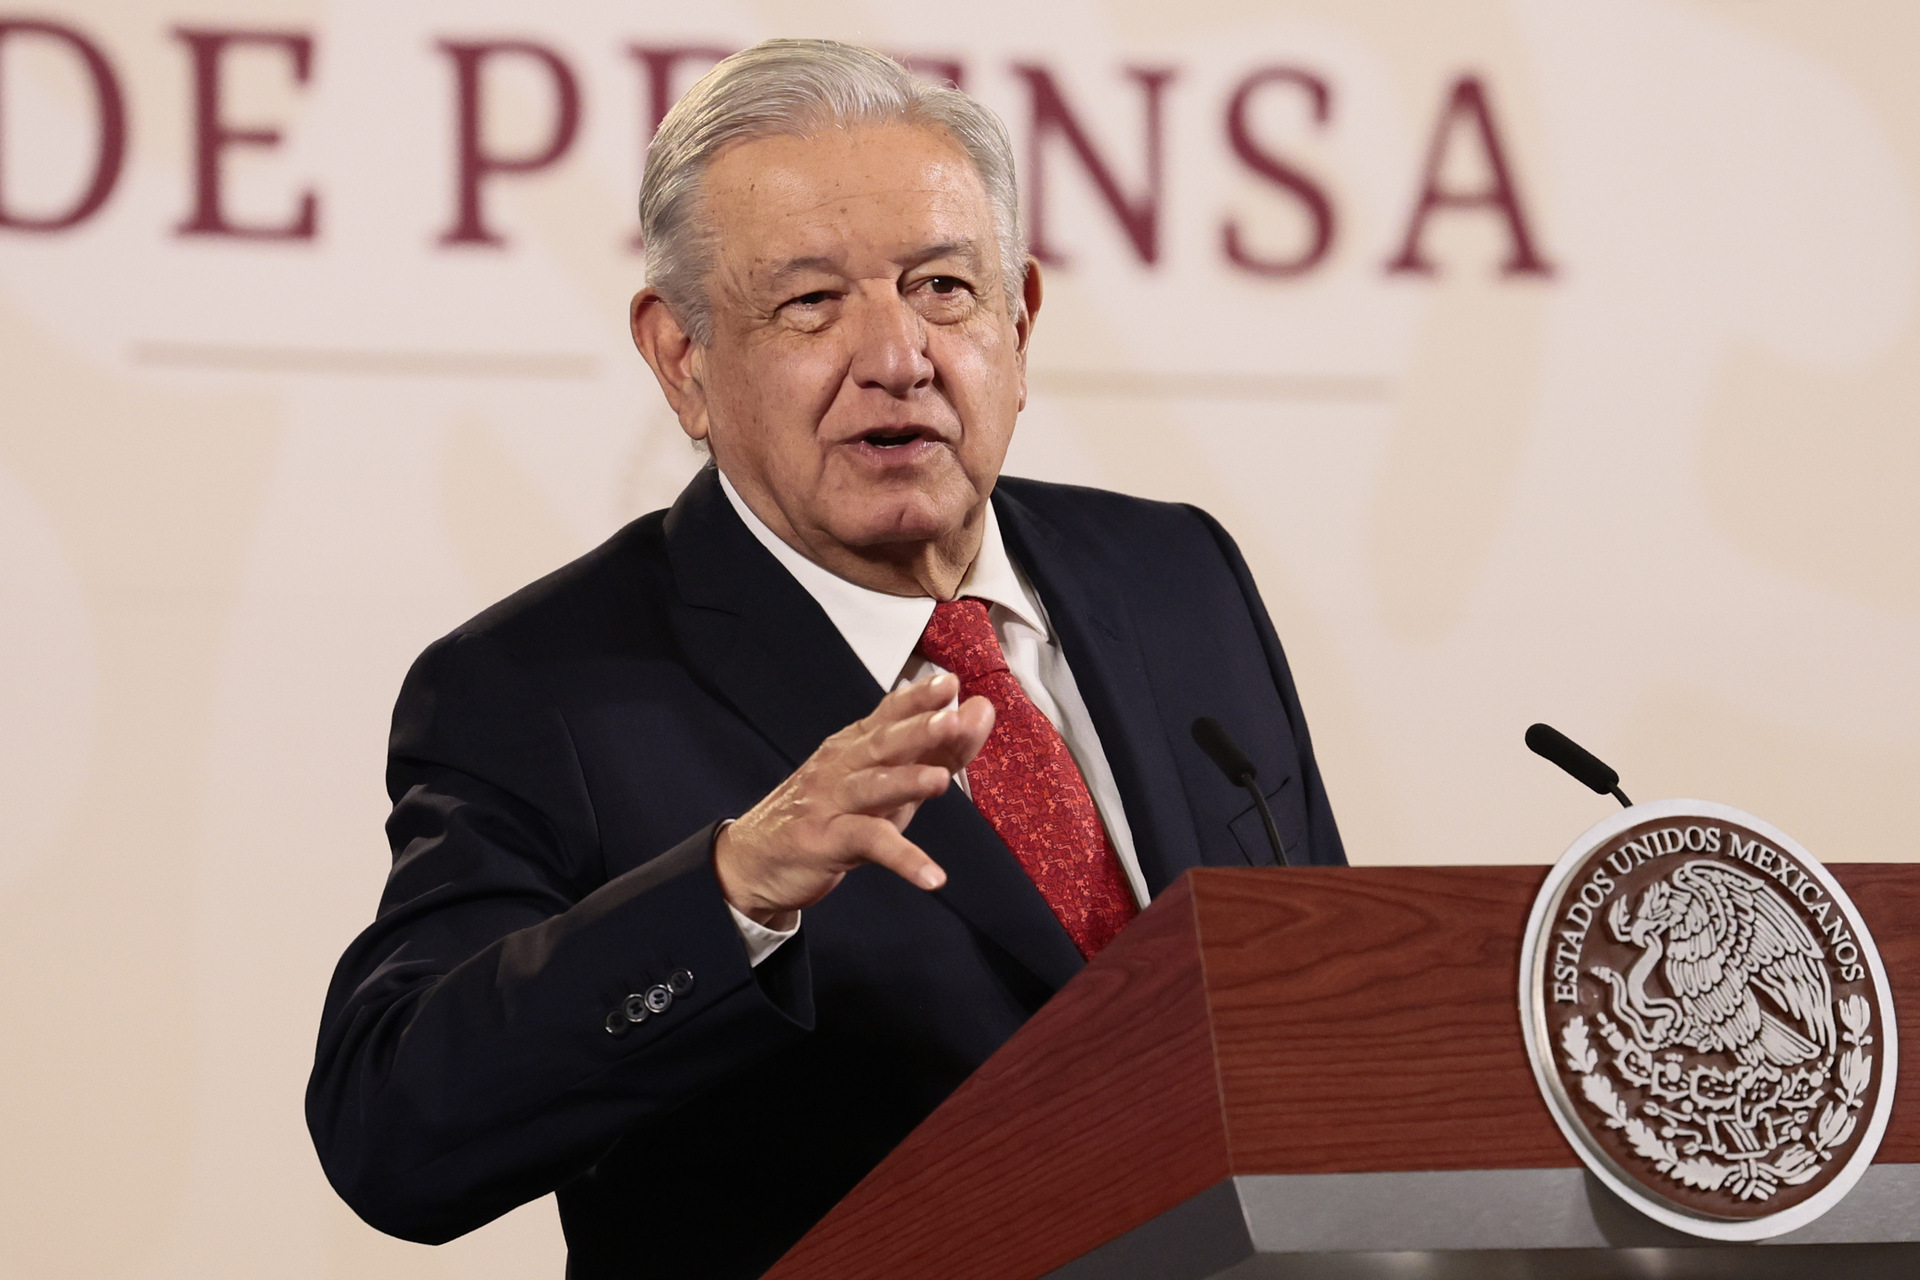 Manolo Jiménez Salinas informó que está en diálogo con el equipo del presidente de la República, Andrés Manuel López Obrador, y se coordina con este para la visita que realizará.